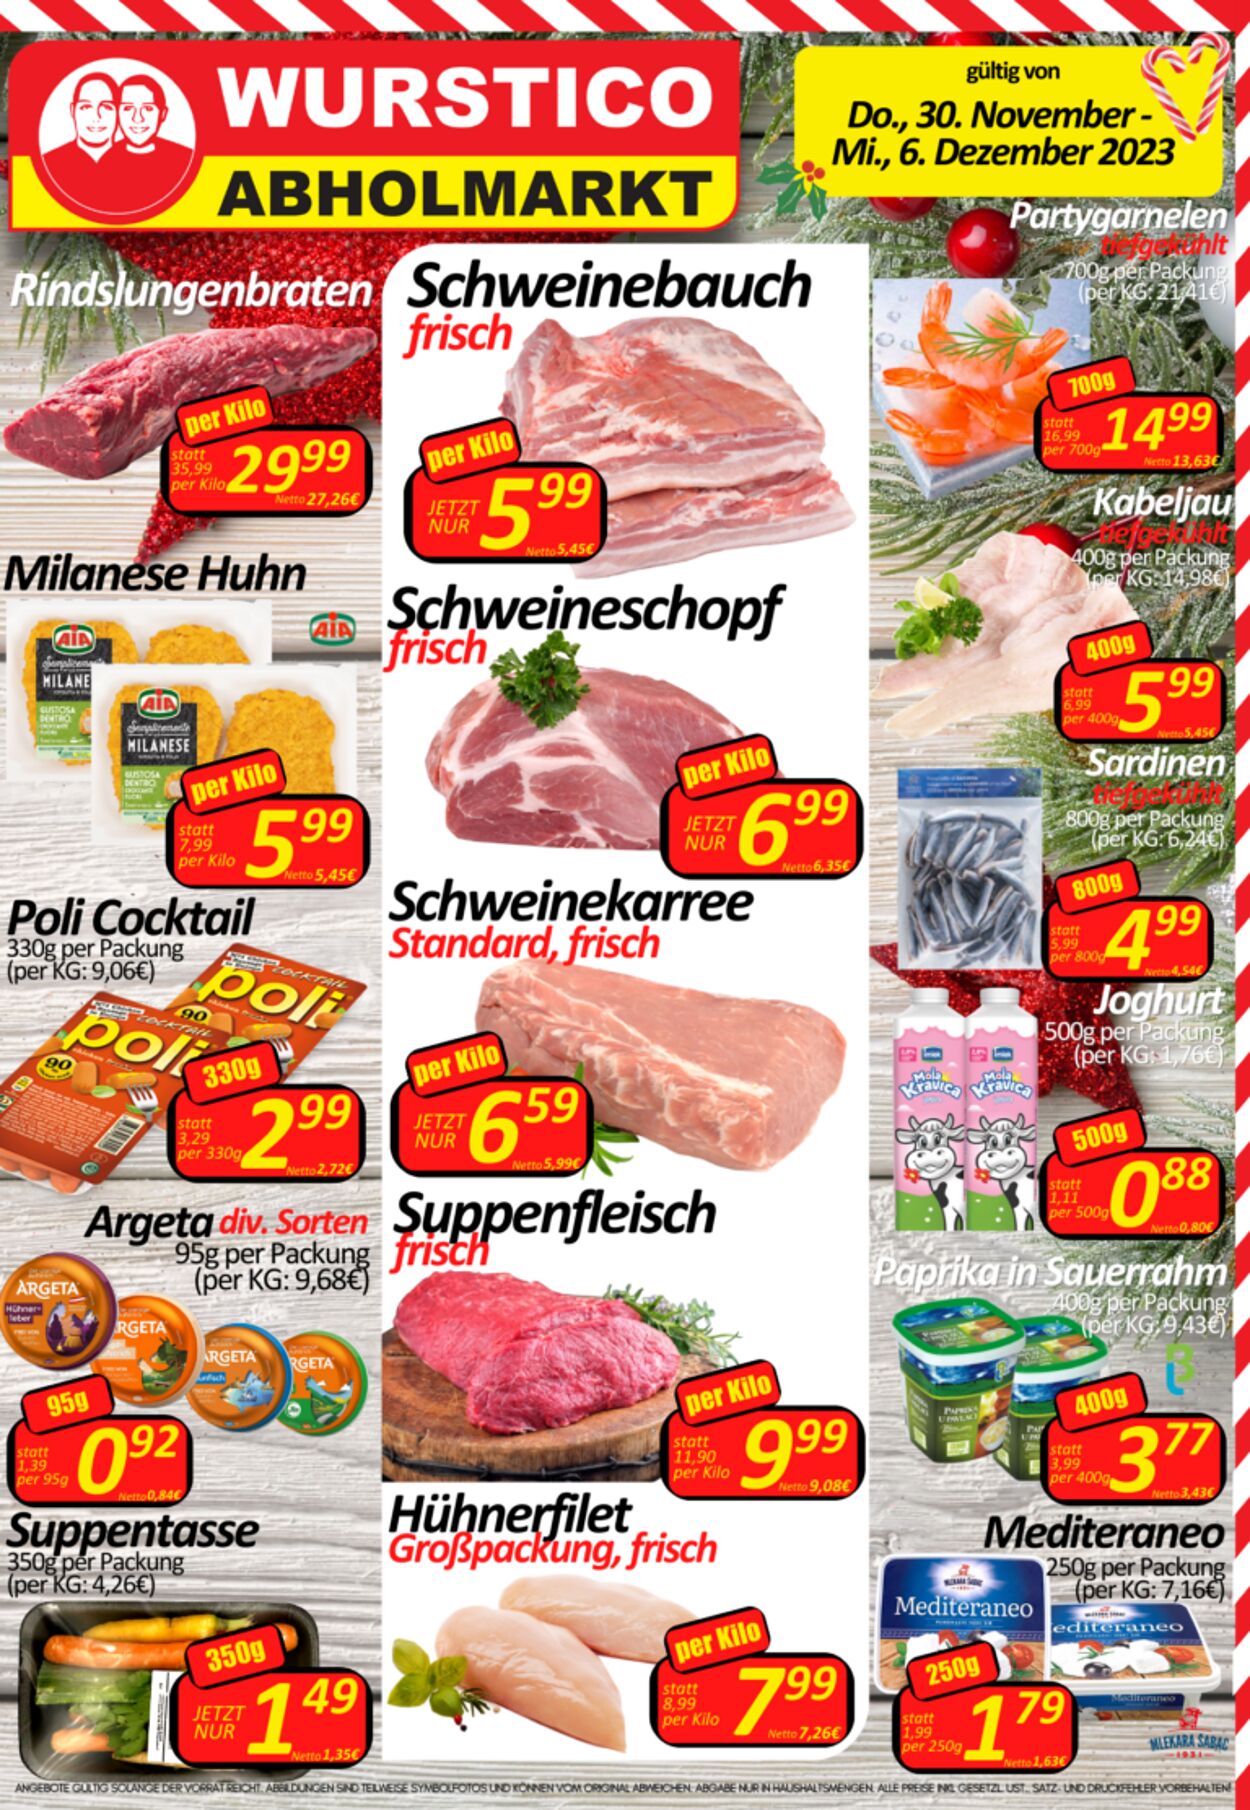 Prospekt Wurstico - Wurstico Abholmarkt – Wurst, Fleischwaren und mehr zu FabrikspreisenAktuelle Angebote bei Wurstico 30 Nov, 2023 - 6 Dez, 2023